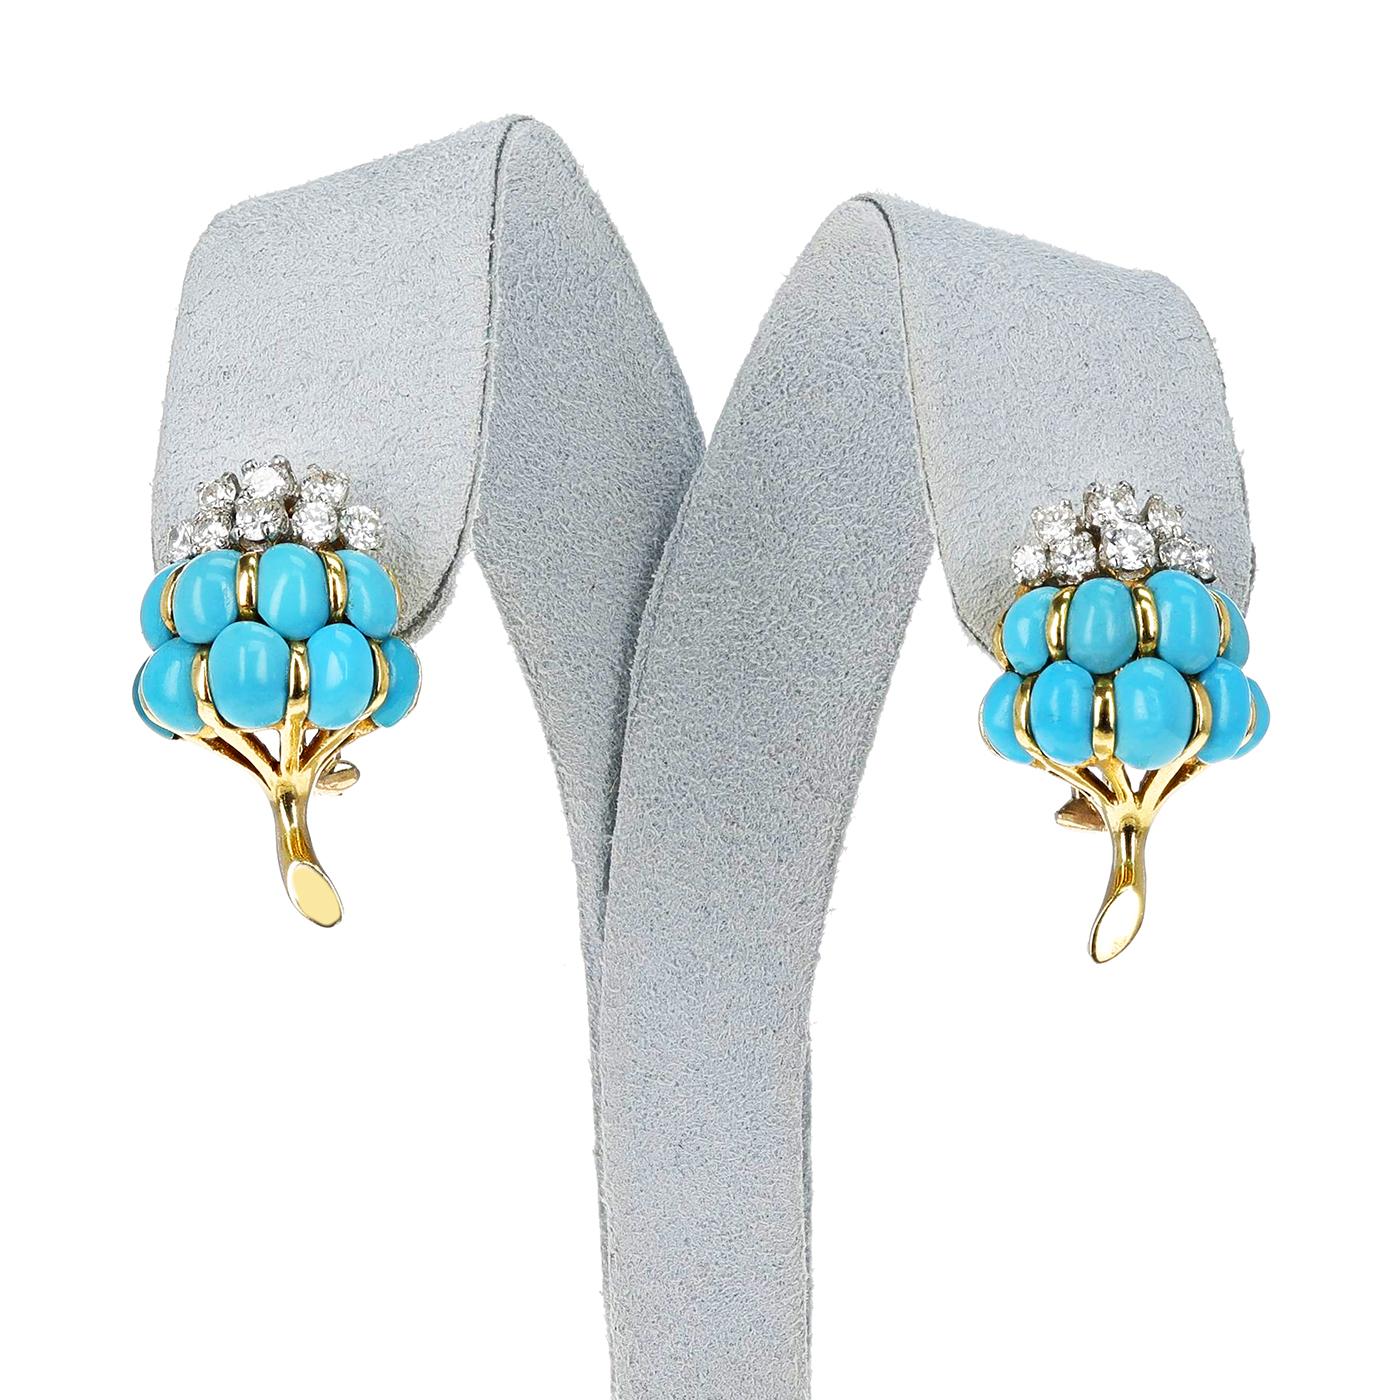 Van Cleef & Arpels Turquoise Cabochon & Diamond Flower Brooch & Earring Set, 18k 1